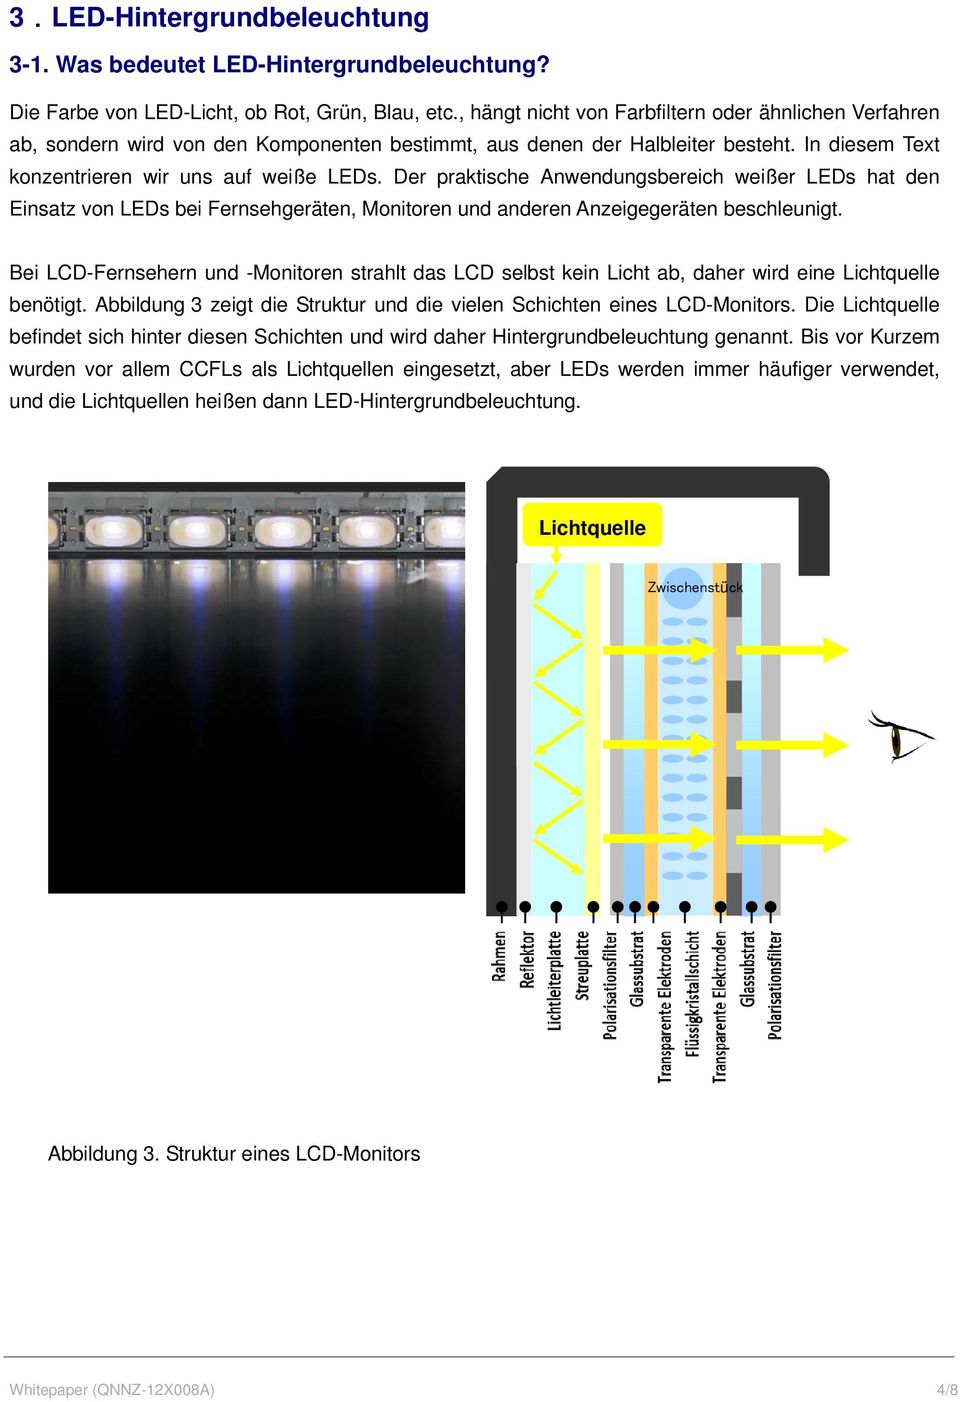 Der praktische Anwendungsbereich weißer LEDs hat den Einsatz von LEDs bei Fernsehgeräten, Monitoren und anderen Anzeigegeräten beschleunigt.